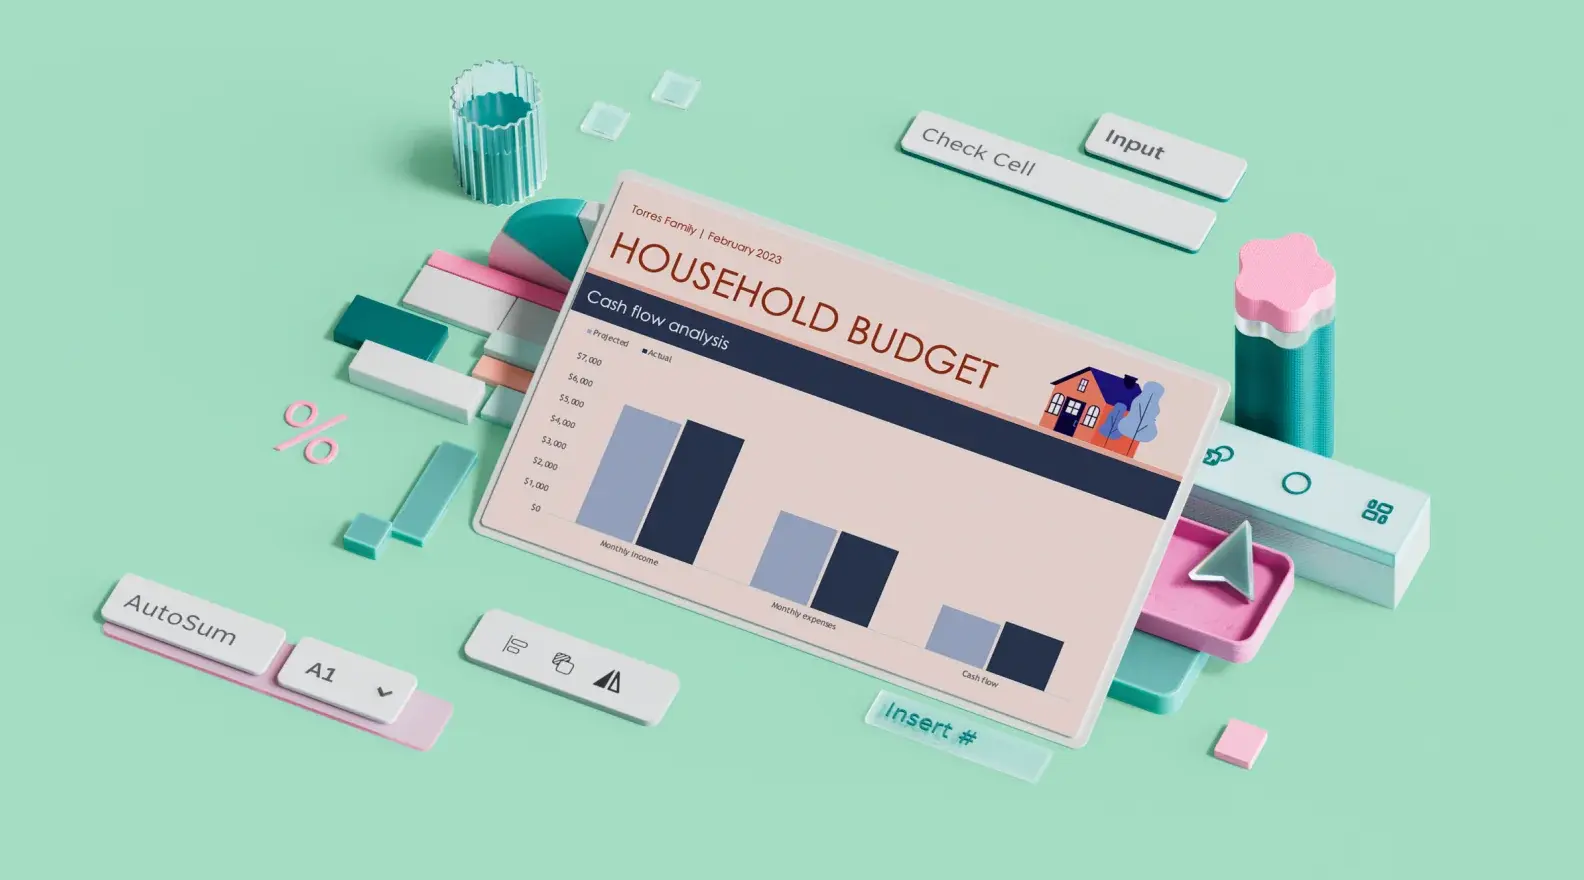 Plantilla de Microsoft Excel de presupuesto familiar rodeada de elementos de diseño en 3D